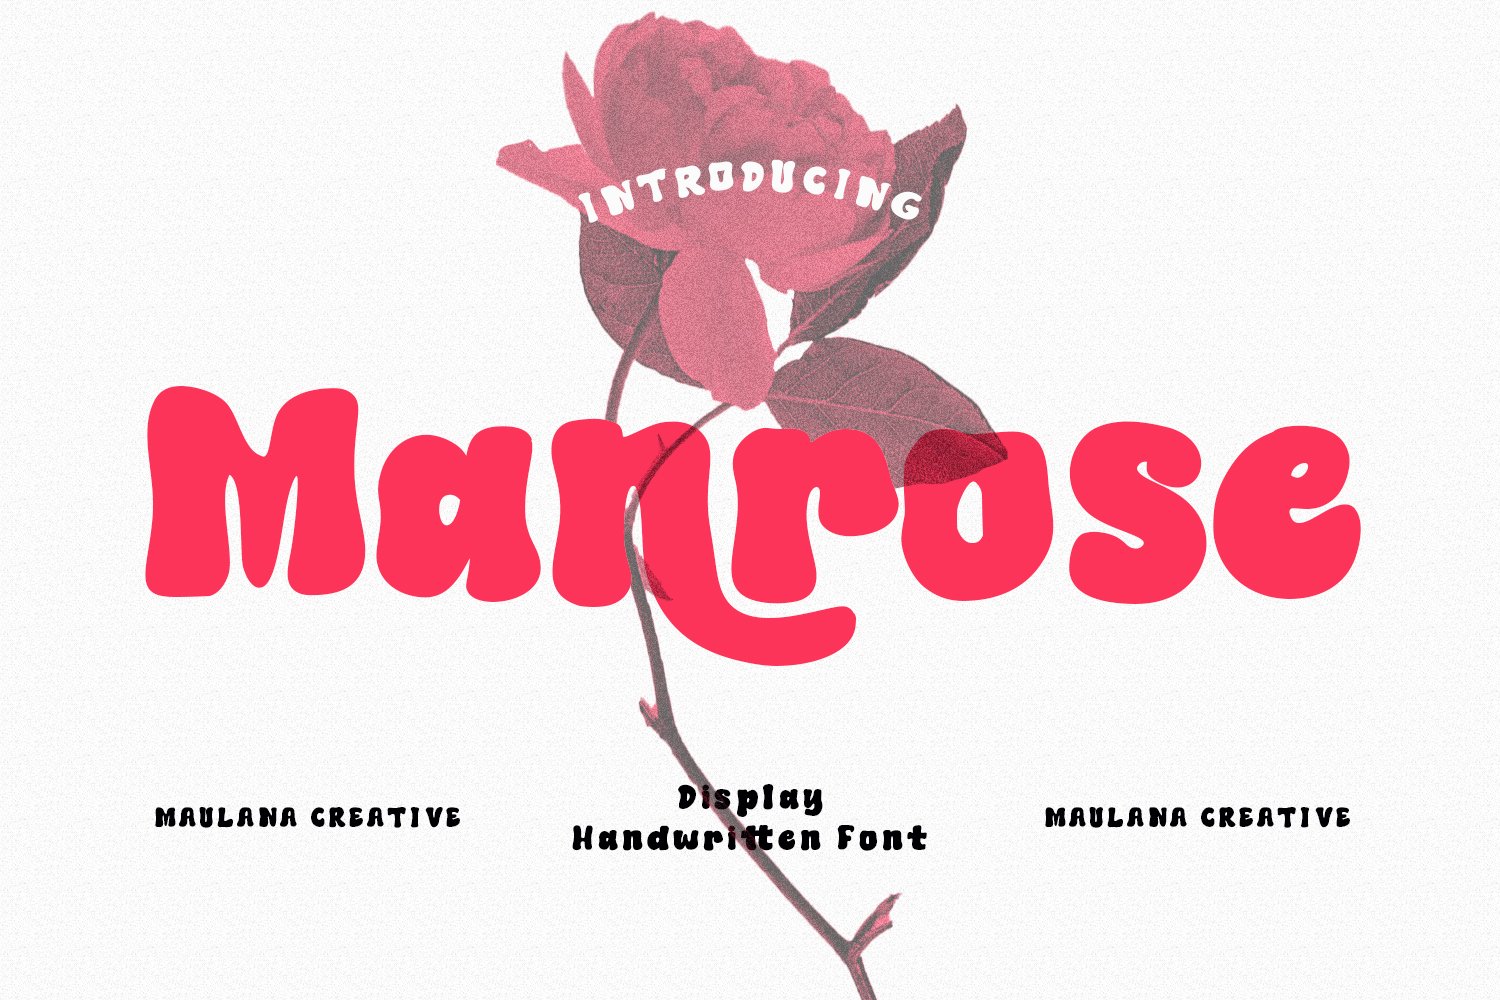 Manrose Handwritten Font cover image.